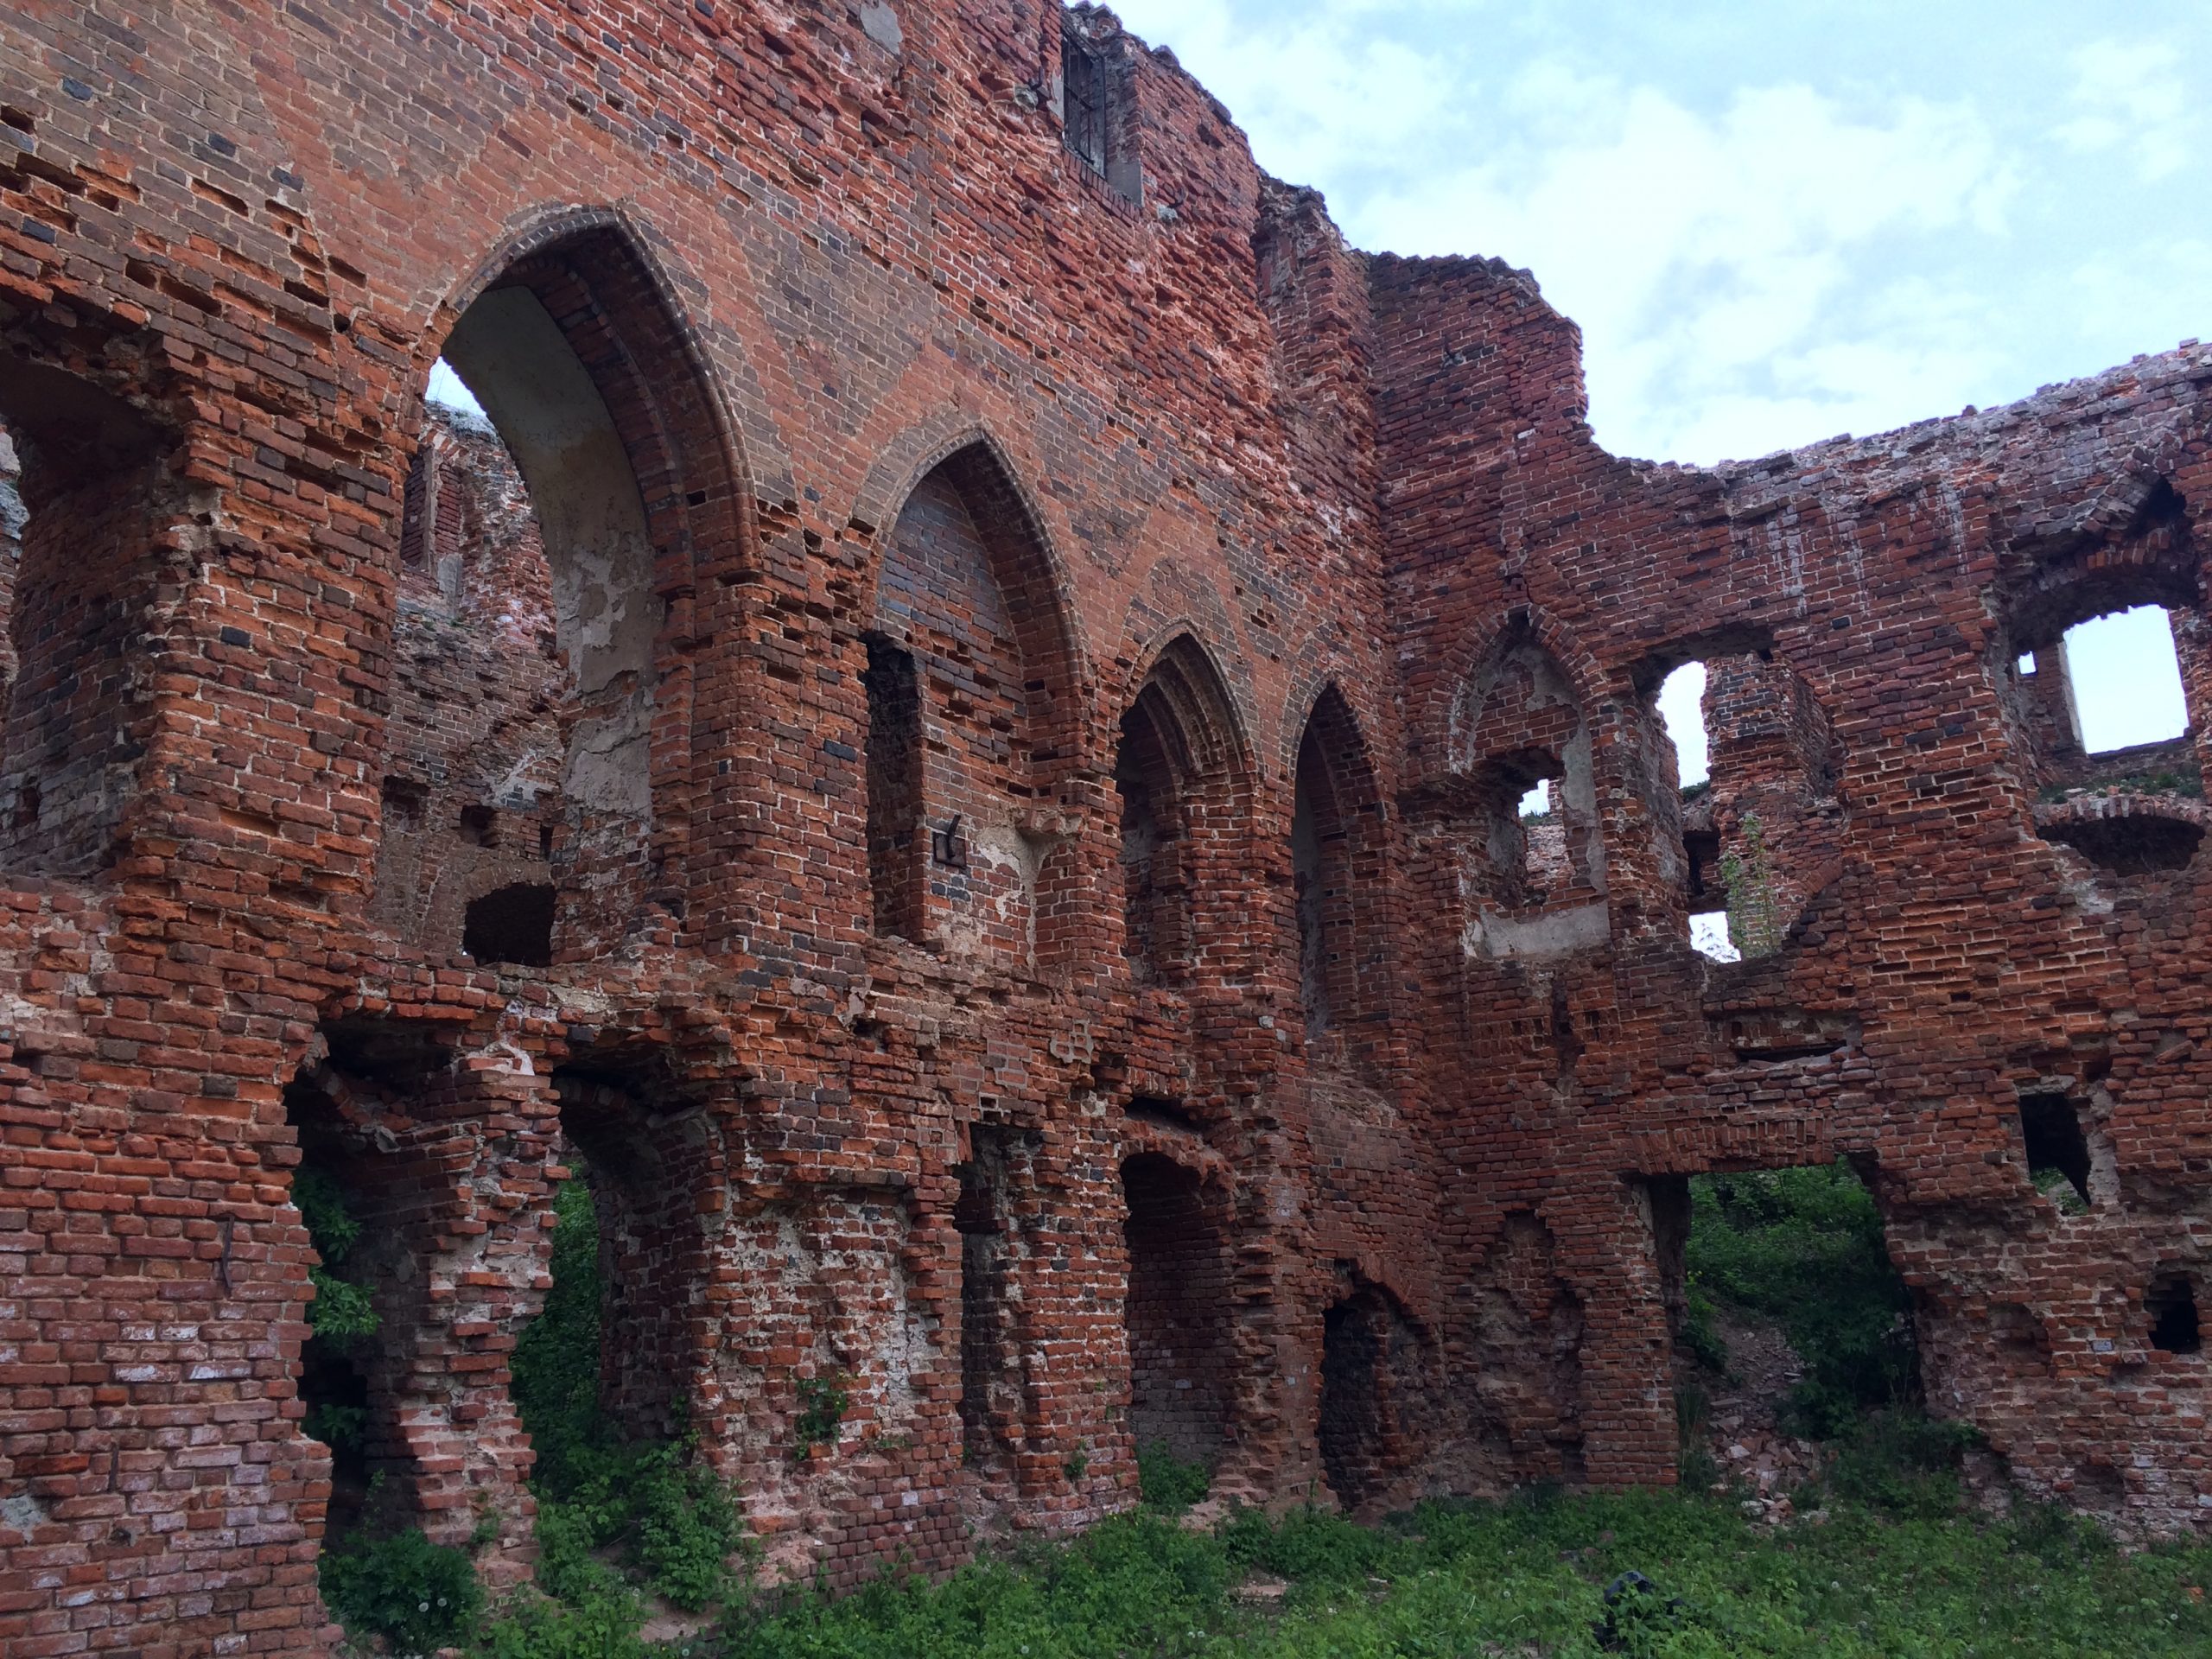 Auf dem Bild sieht man die Ruinen der Ordensburg Ragnit im Gebiet Kaliningrad in Russland.